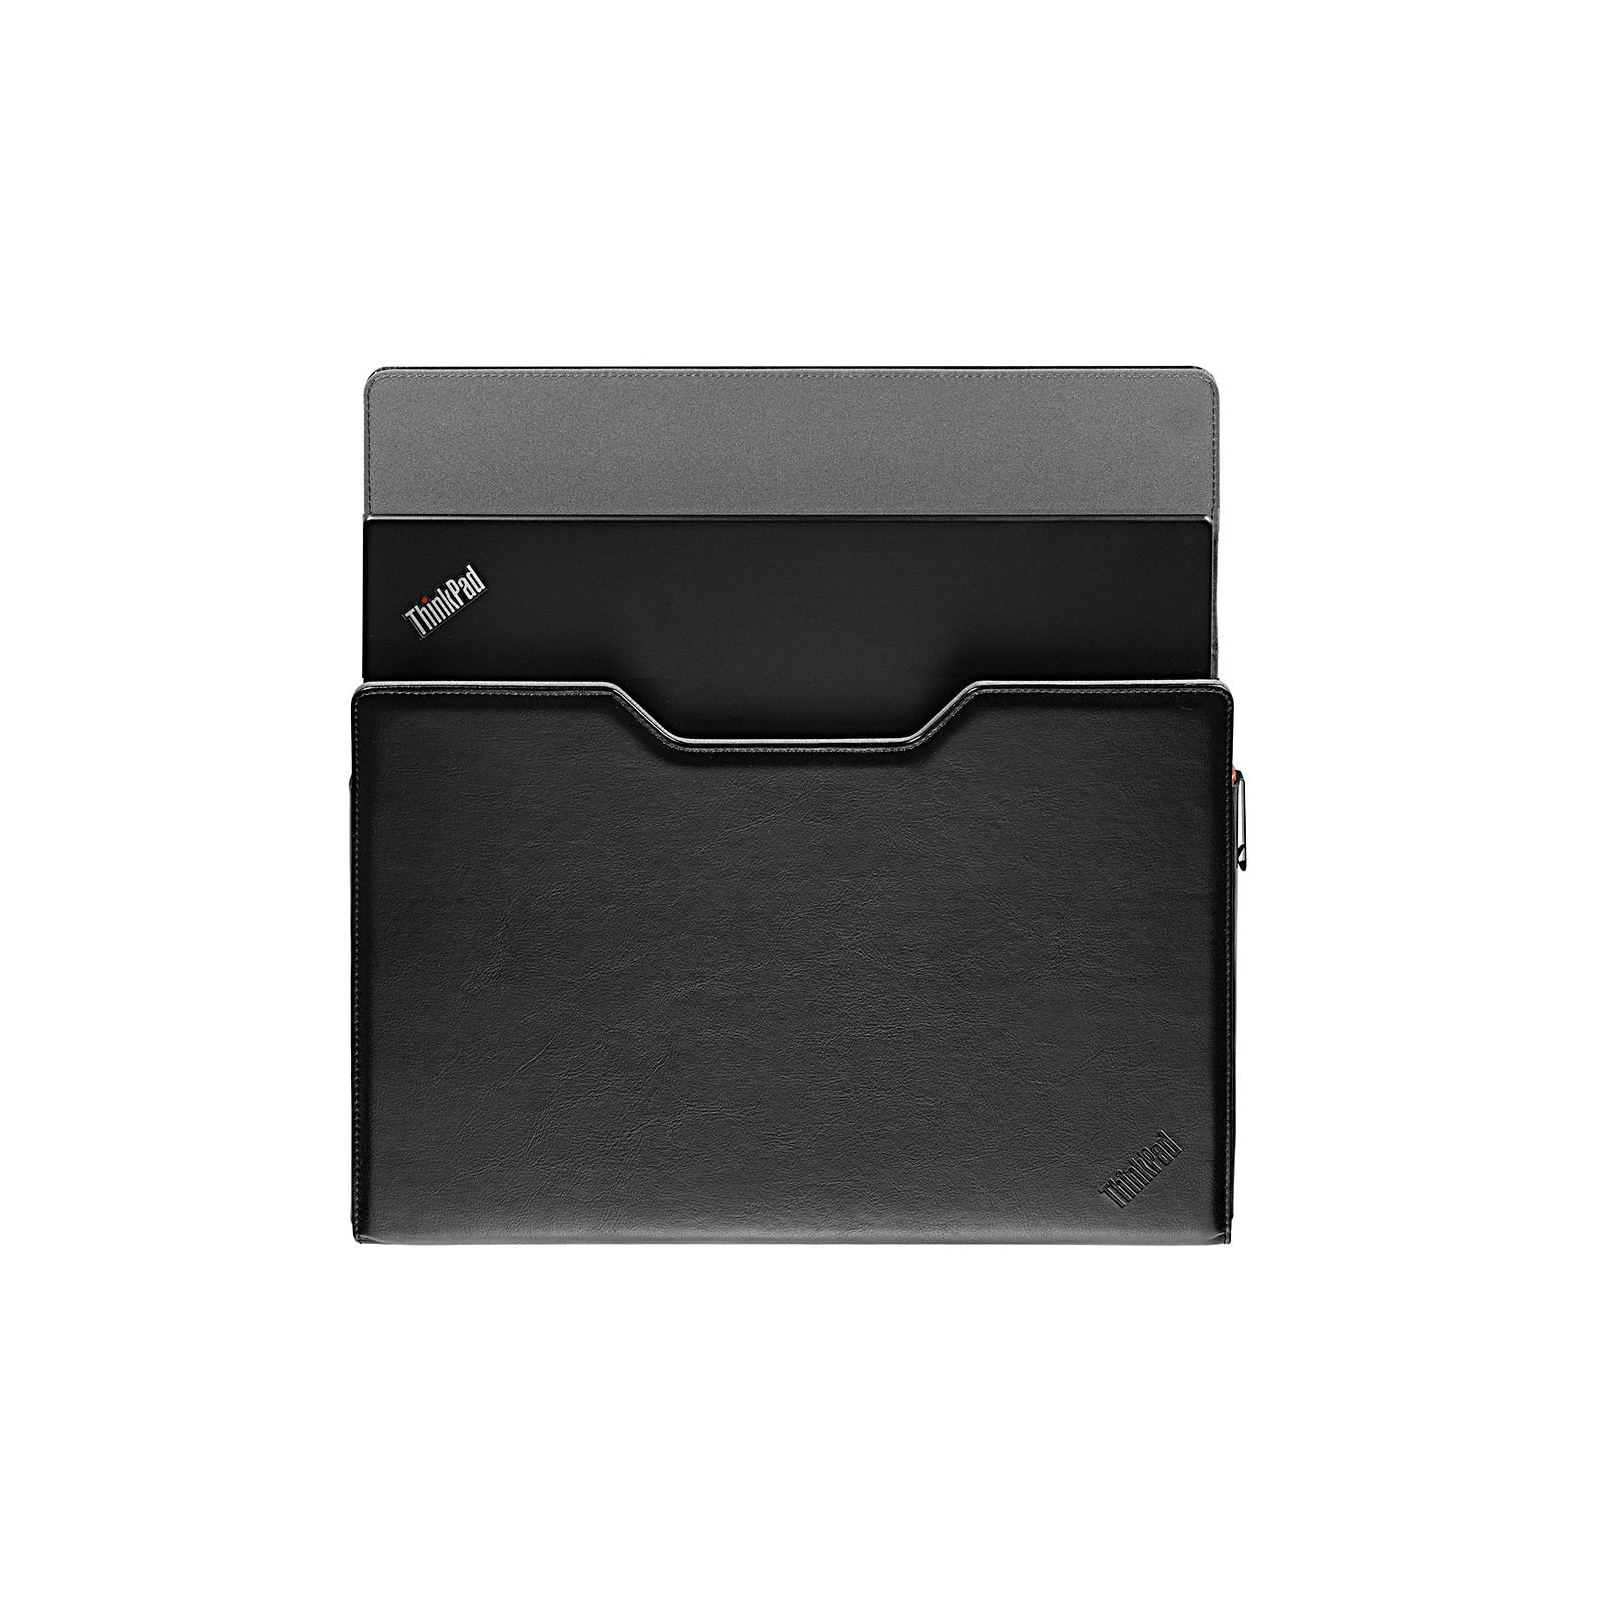 Чехол для ноутбука Lenovo 14" ThinkPad X1 S Black (4X40K41705) изображение 3